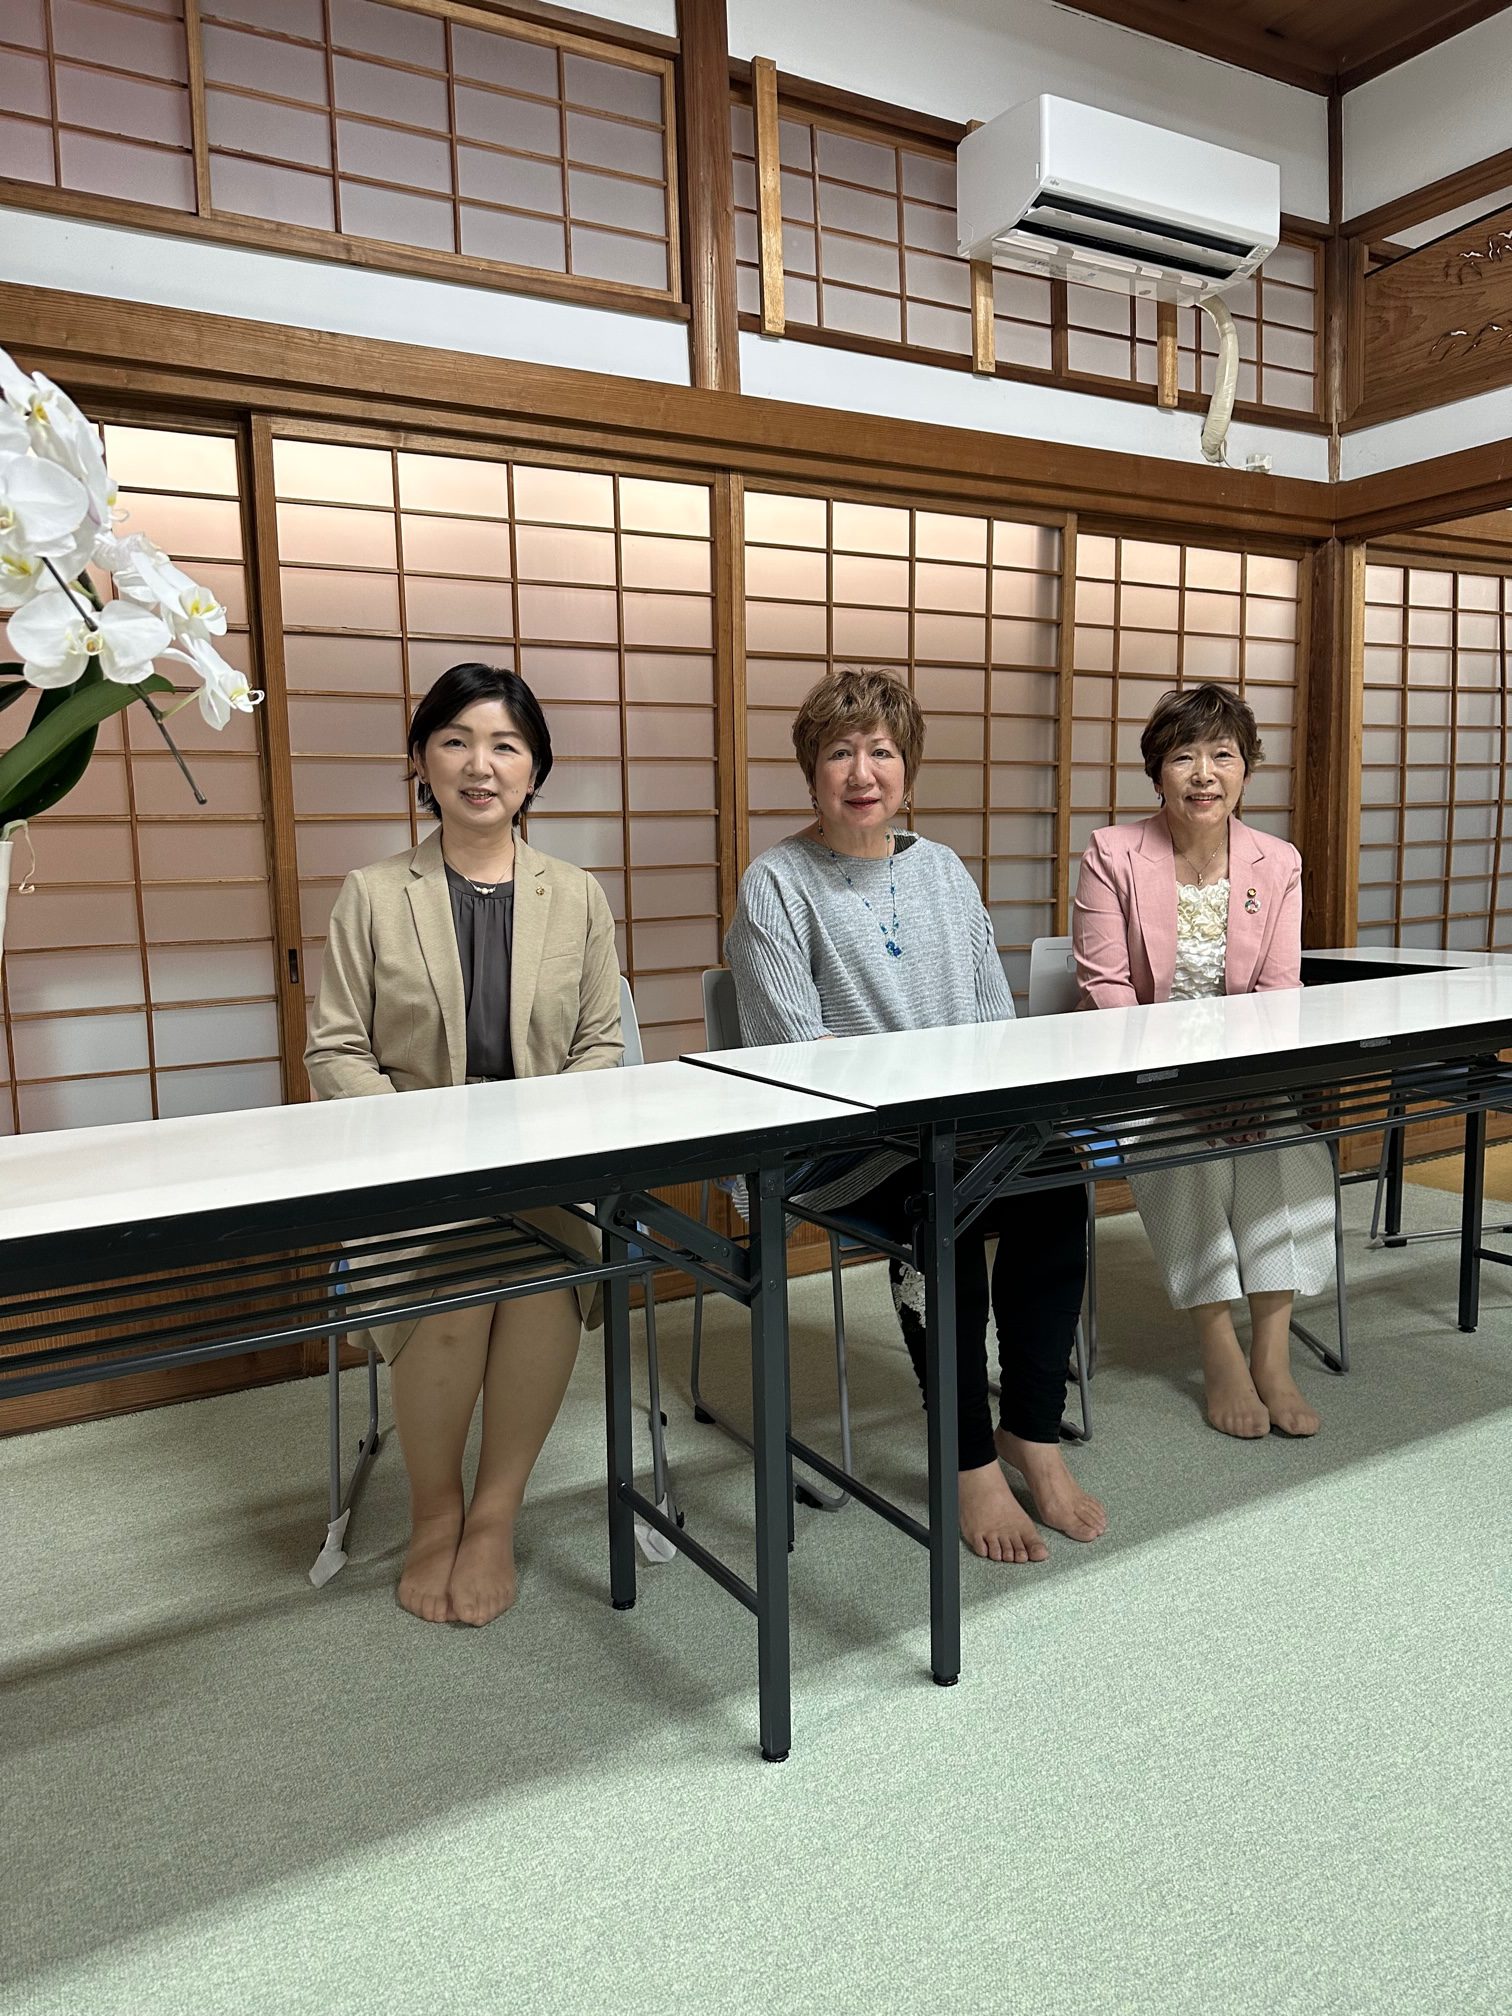 福岡県助産師会訪問、県への要望について意見交換